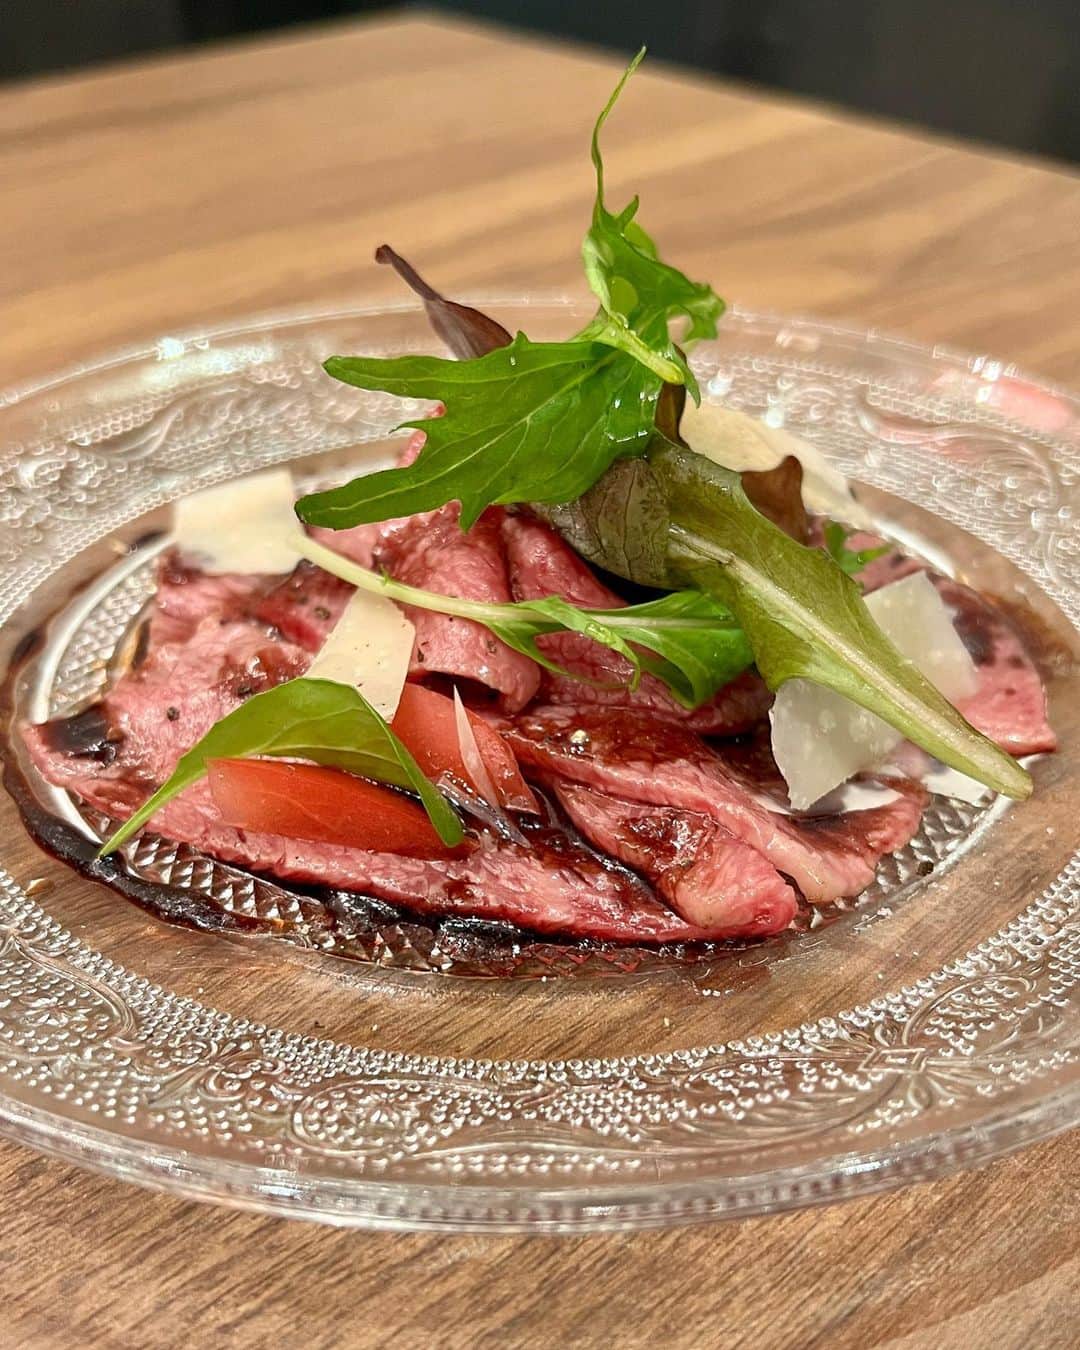 福岡グルメ 福岡ランチ「デビログ」さんのインスタグラム写真 - (福岡グルメ 福岡ランチ「デビログ」Instagram)「平尾にある『炭火焼肉バル AGITO HIRAO』の新しい業態『エニグマキッチン』に行ってきたよ。 場所は『AGITO HIRAO』内で、洋風肉料理をメインにしたメニューを食べることができる。 『エニグマキッチン』の営業時間は日曜日の16:00～23:00 LOと、火曜〜土曜の21:00〜0:00 LOだから、平日の21:00からは『AGITO HIRAO』と『エニグマキッチン』の両方のメニューを食べることができるのだ。  忙しくなければ、ボリューム控えめの小サイズにも対応してくれるらしい。  「牛ハラミのステックフリット」2189円 (今回は小サイズ1,419円) 食感の良い牛ハラミとフライドポテトの盛り合わせ。自家製エスカルゴバターとポメリーソースの相性が素晴らしい。  「牛挽肉のアランチーニ」539円は、シチリア名物のライスコロッケらしい。カリッとした衣と中に入っているリゾット、チーズ、挽肉のバランスが最高。これはオススメ！  「TOKYO X のヒレカツ ひんぎゃの塩で」2,189円(今回は小サイズ1,419円) なかなか福岡では手に入りにくい「TOKYO X」のヒレカツは柔らかくて美味いよ。伊豆諸島最南端の青ヶ島産「ひんぎゃの塩」が合う。 入荷されない時もあるらしいので、ある時は是非食べてほしい。  「サルシッチャ風牛タンとフレッシュトマトのペペロンチーノ」1,529円 (今回は小サイズ1,089円) 味付けした牛タンの挽き肉をサルシッチャ(生ソーセージ)に見立てたオリジナルパスタらしい。肉の旨味とニンニクの香ばしさがクセになるよ。  「伊万里牛クリミのカルパッチョ」1,969円（今回は小サイズ1,309円) 伊万里牛クリミは柔らかくて旨味があるよ。ソースは特製バルサミコソースで、カシスリキュールと醤油が隠し味らしい。  「スカーリアさんのアンチョビキャベツ」429円は、ミシュラン３ツ星レストランでも使用される上質なアンチョビを使用したもの。 ニンニクとアンチョビで酒がすすむ一品やね。  「自家製とろける生チョコ」429円 生クリームをたっぷり使用した生チョコは、口の中でとろける！  ▶エニグマキッチン @enigma_kitchen 福岡市中央区平尾2-15-1 (炭火焼肉バル AGITO HIRAO内) 092-707-2989 (炭火焼肉バル AGITO HIRAO) 日曜 16:00～23:00 LO 火曜〜土曜 21:00〜0:00 LO 定休日：月曜＋不定休  #Fukuoka Gourmet ``Enigma Kitchen'' is a new business form of ``Charcoal-grilled Yakiniku Bar AGITO HIRAO'' where you can enjoy a menu centered on Western-style meat dishes.  #후쿠오카 '에니그마 키친'은 '숯불 불고기 발 AGITO HIRAO'의 신업태로 서양식 고기 요리를 메인으로 한 메뉴를 먹을 수 있다.  #福岡美食 「Enigma Kitchen」是「炭烤烤肉吧AGITO HIRAO」的新業態，提供以西式肉類菜餚為主的菜單。  #福岡グルメ #福岡ディナー #平尾グルメ #平尾ディナー #エニグマキッチン #enigmakitchen #アギト新業態」11月11日 7時53分 - devi_takahashi